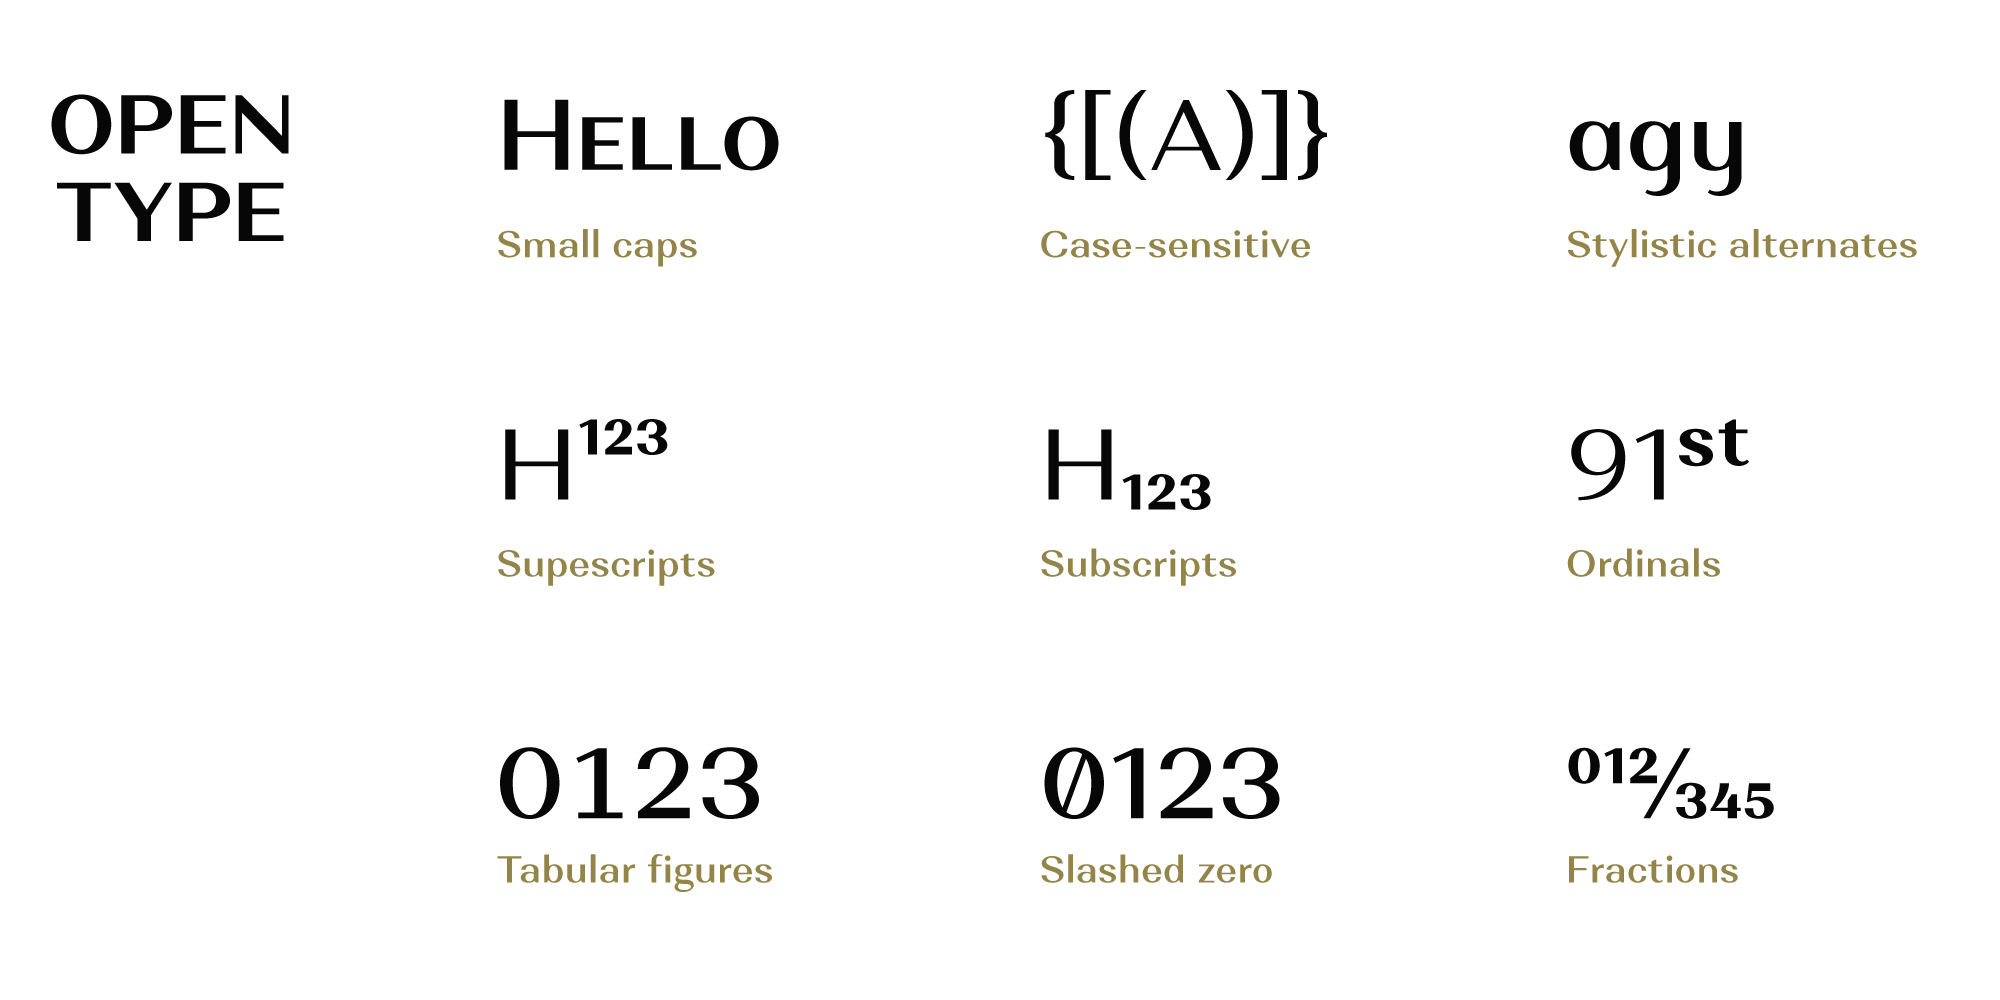 Alethia Next Typeface